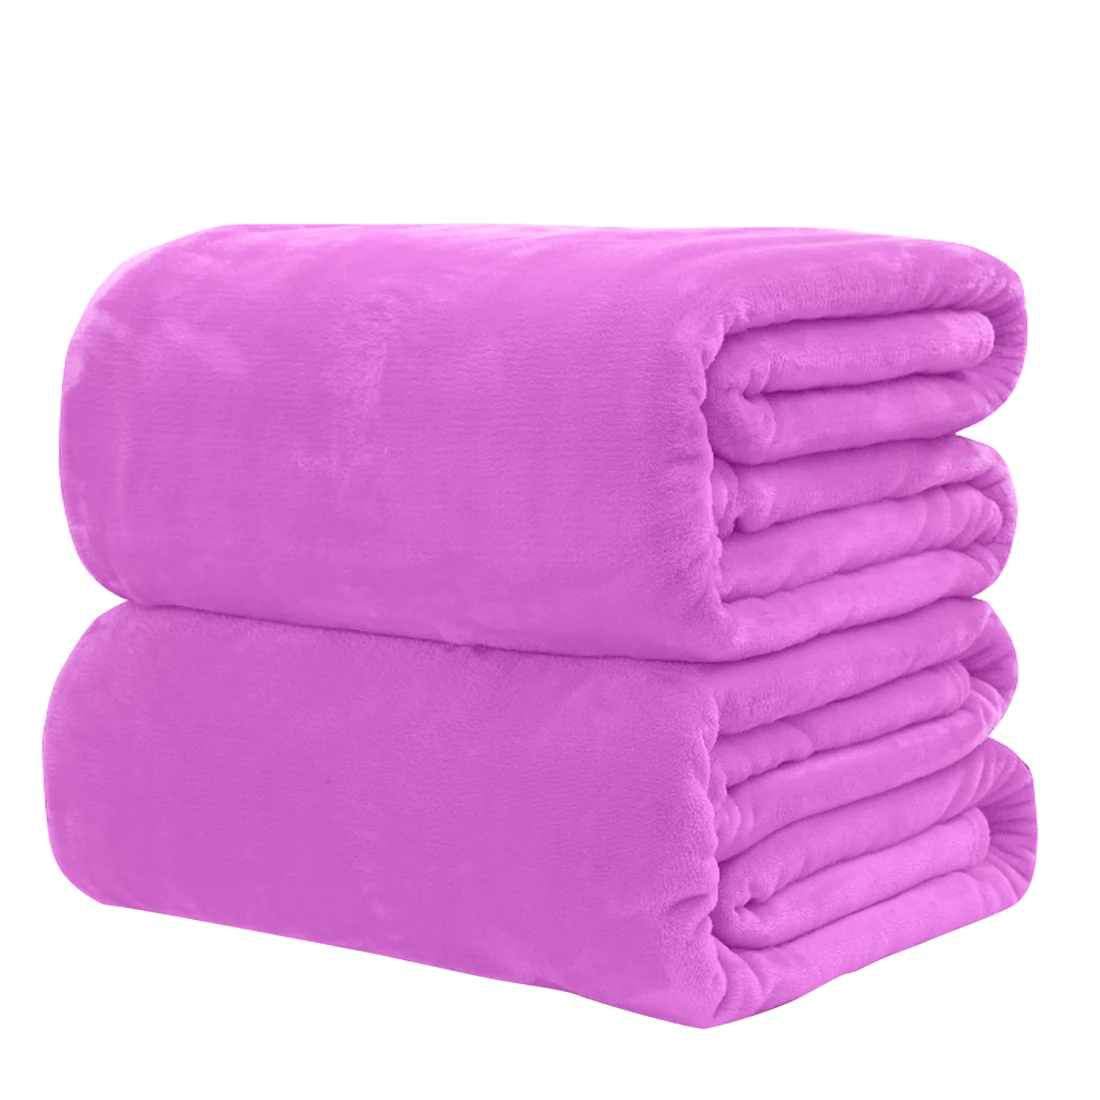 Домашний текстиль, супер мягкое фланелевое одеяло для самолета, дивана, офиса, детское одеяло, полотенце для путешествий, флисовое портативное автомобильное одеяло - Цвет: purple